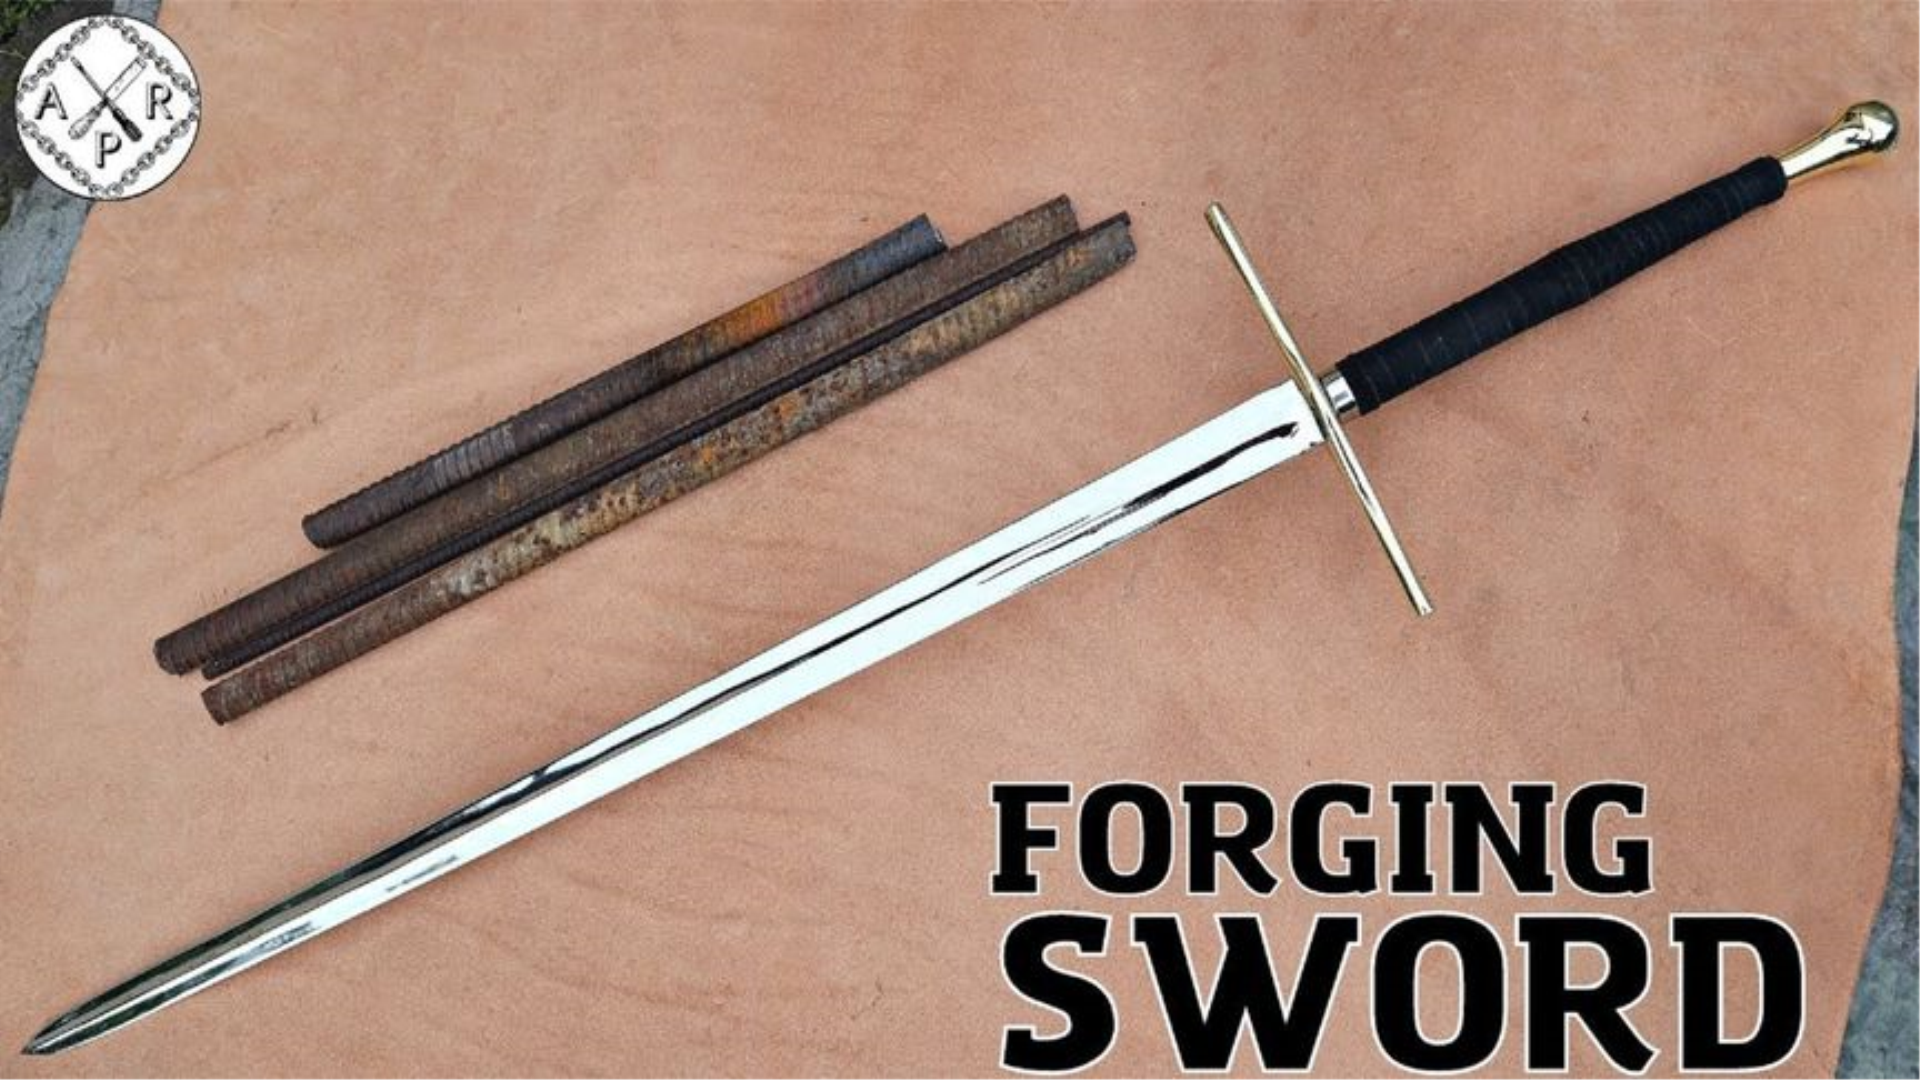 用生锈的钢筋铸造一把欧洲双手剑,威力巨大,一剑可斩万物!